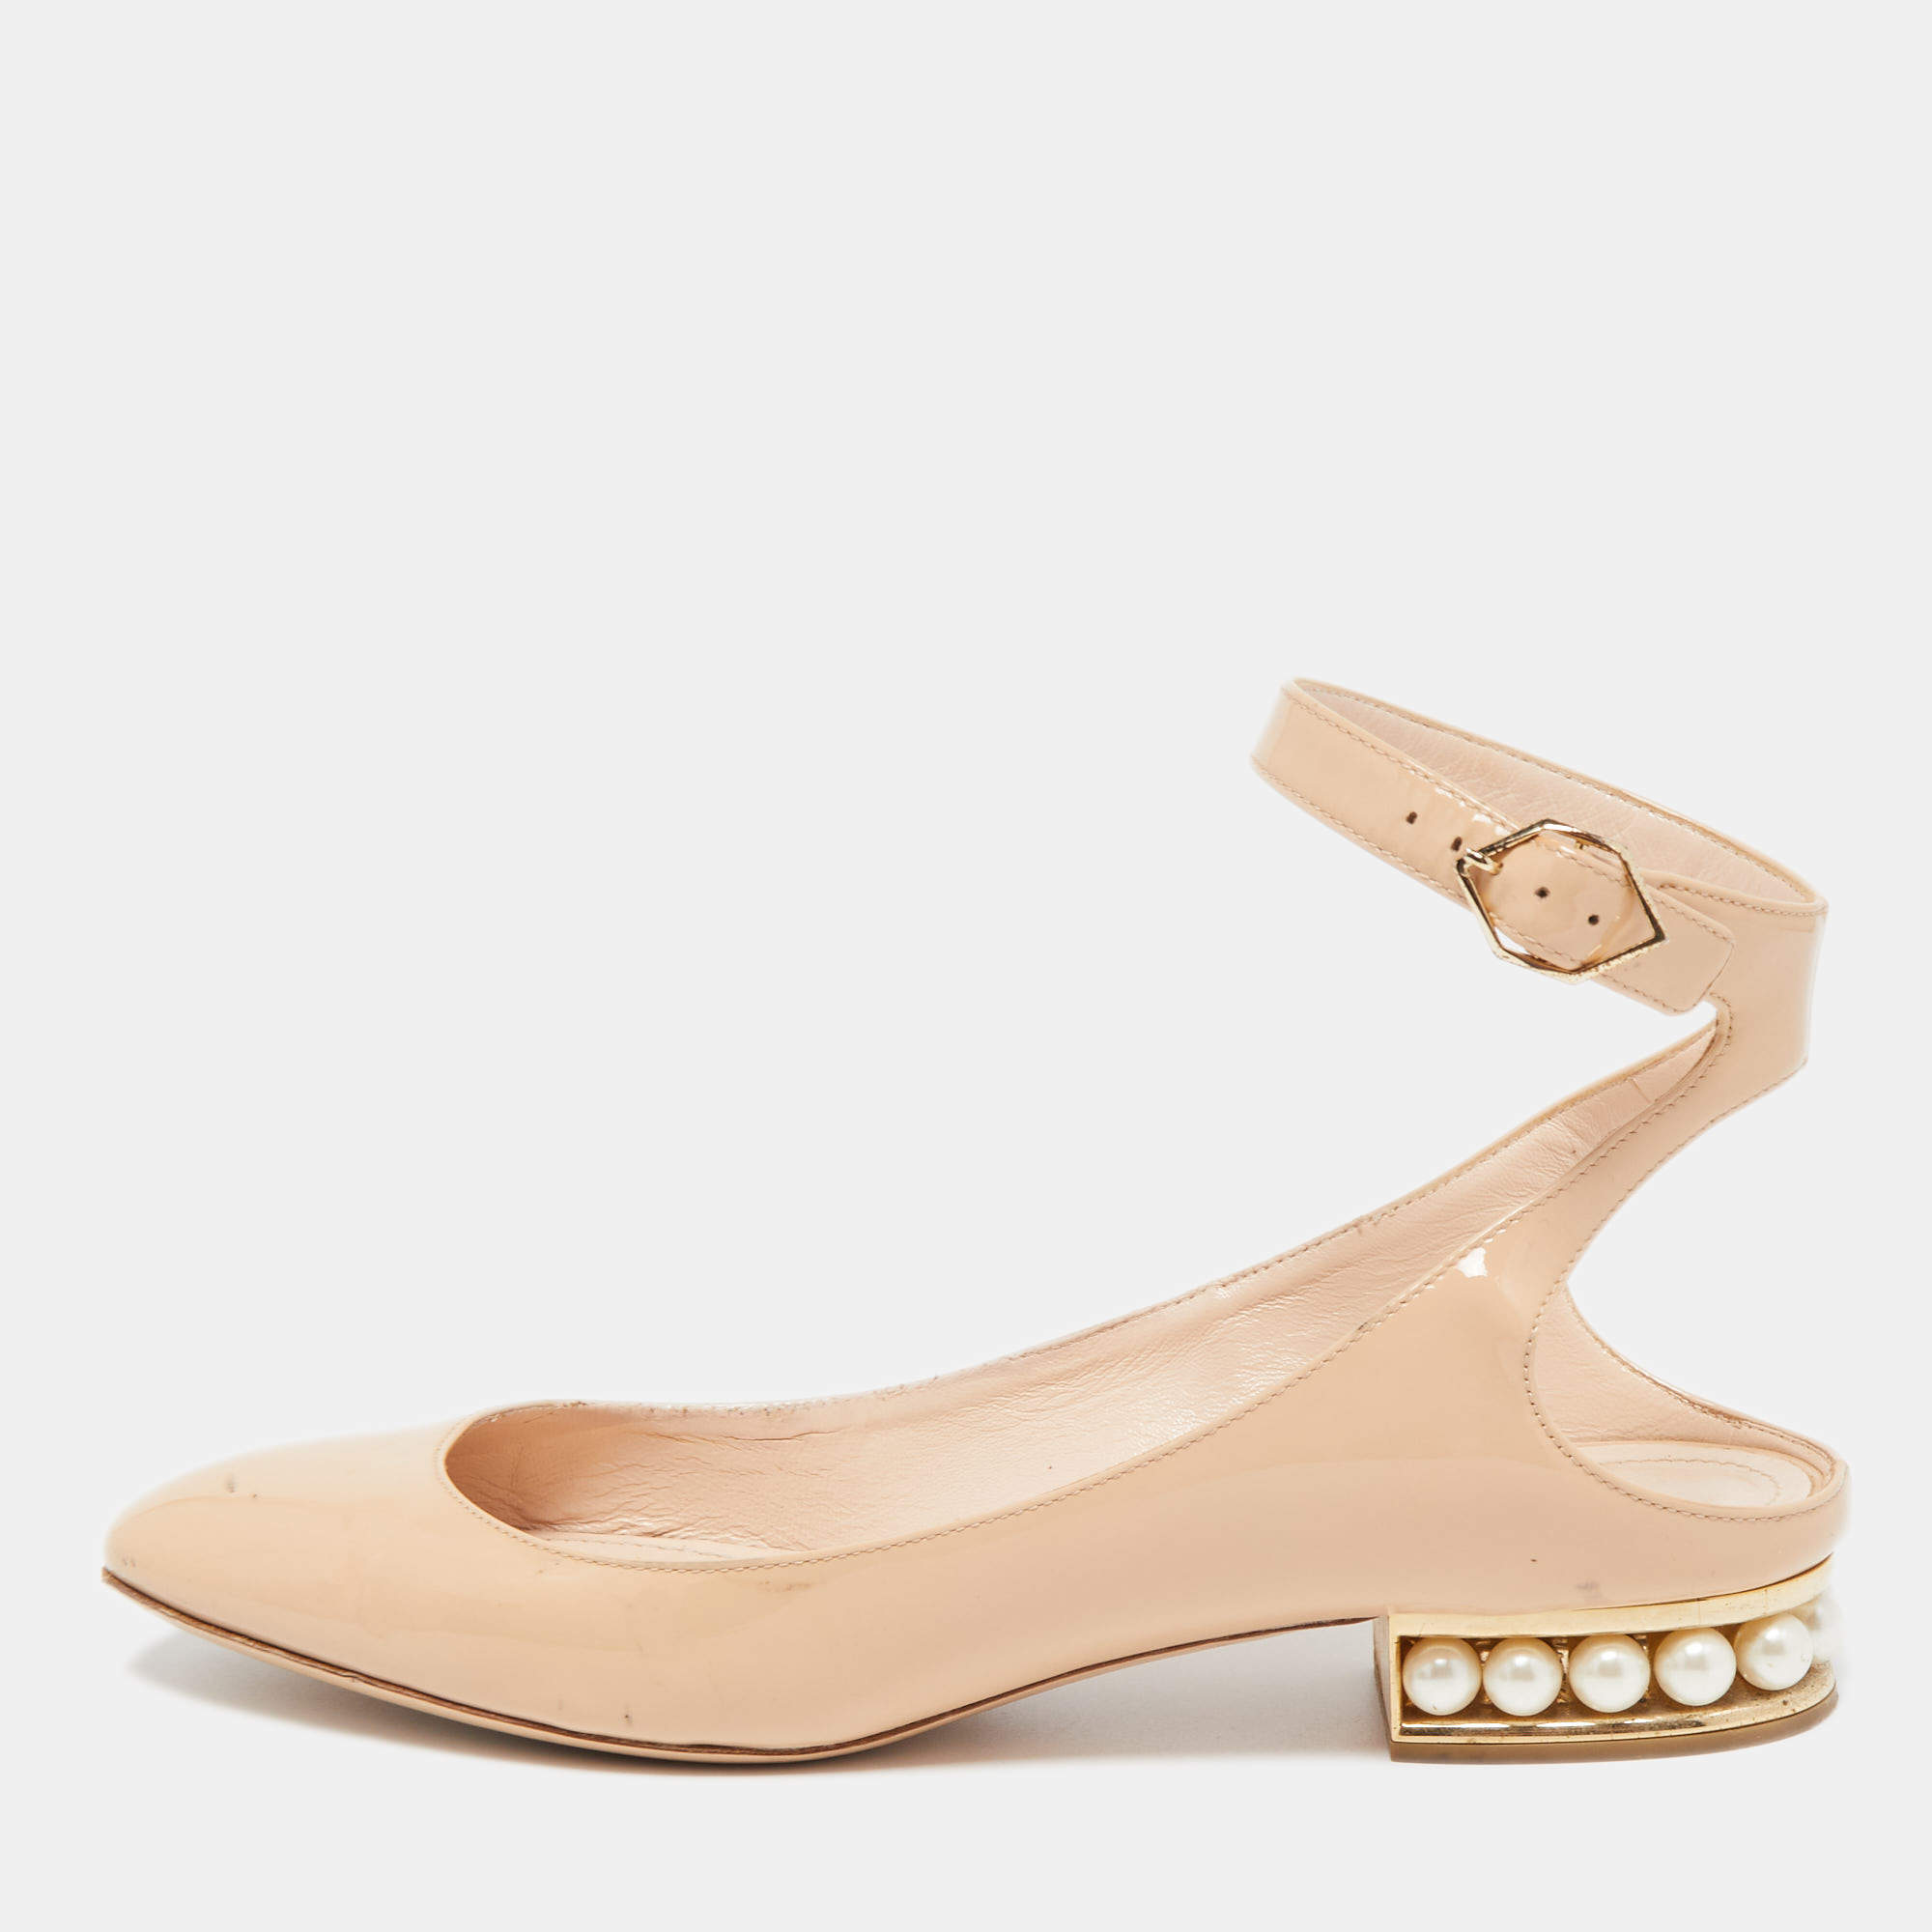 Nicholas Kirkwood Shoe Size 39.5 Beige & Gold Canvas Pearl Detail Flats